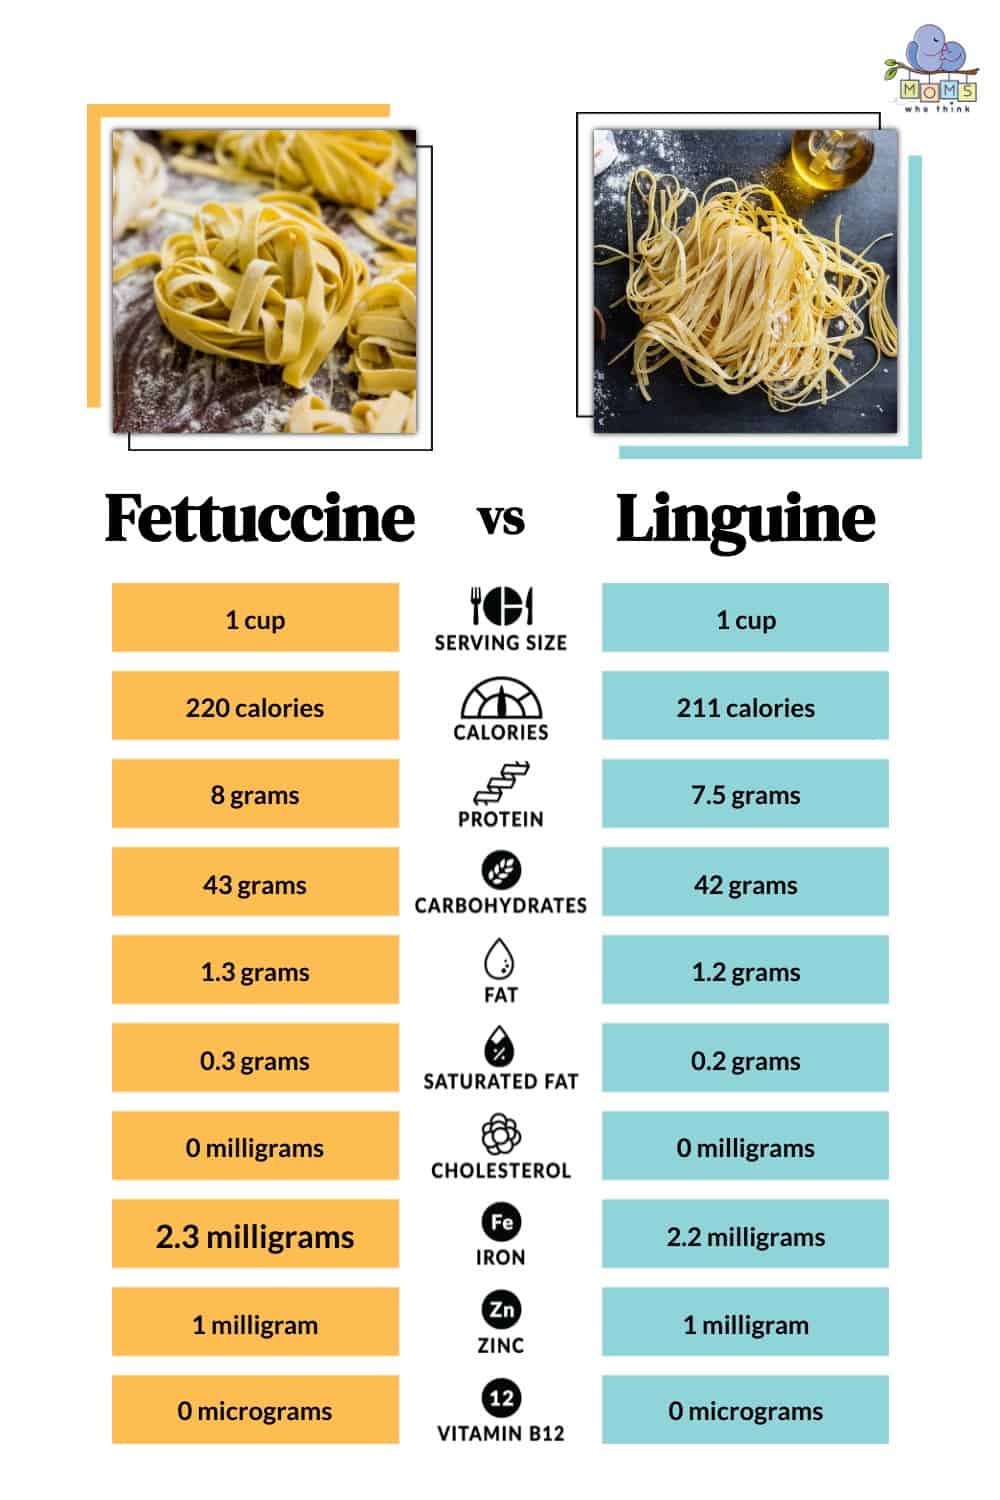 Fettuccine vs Linguine Nutrition